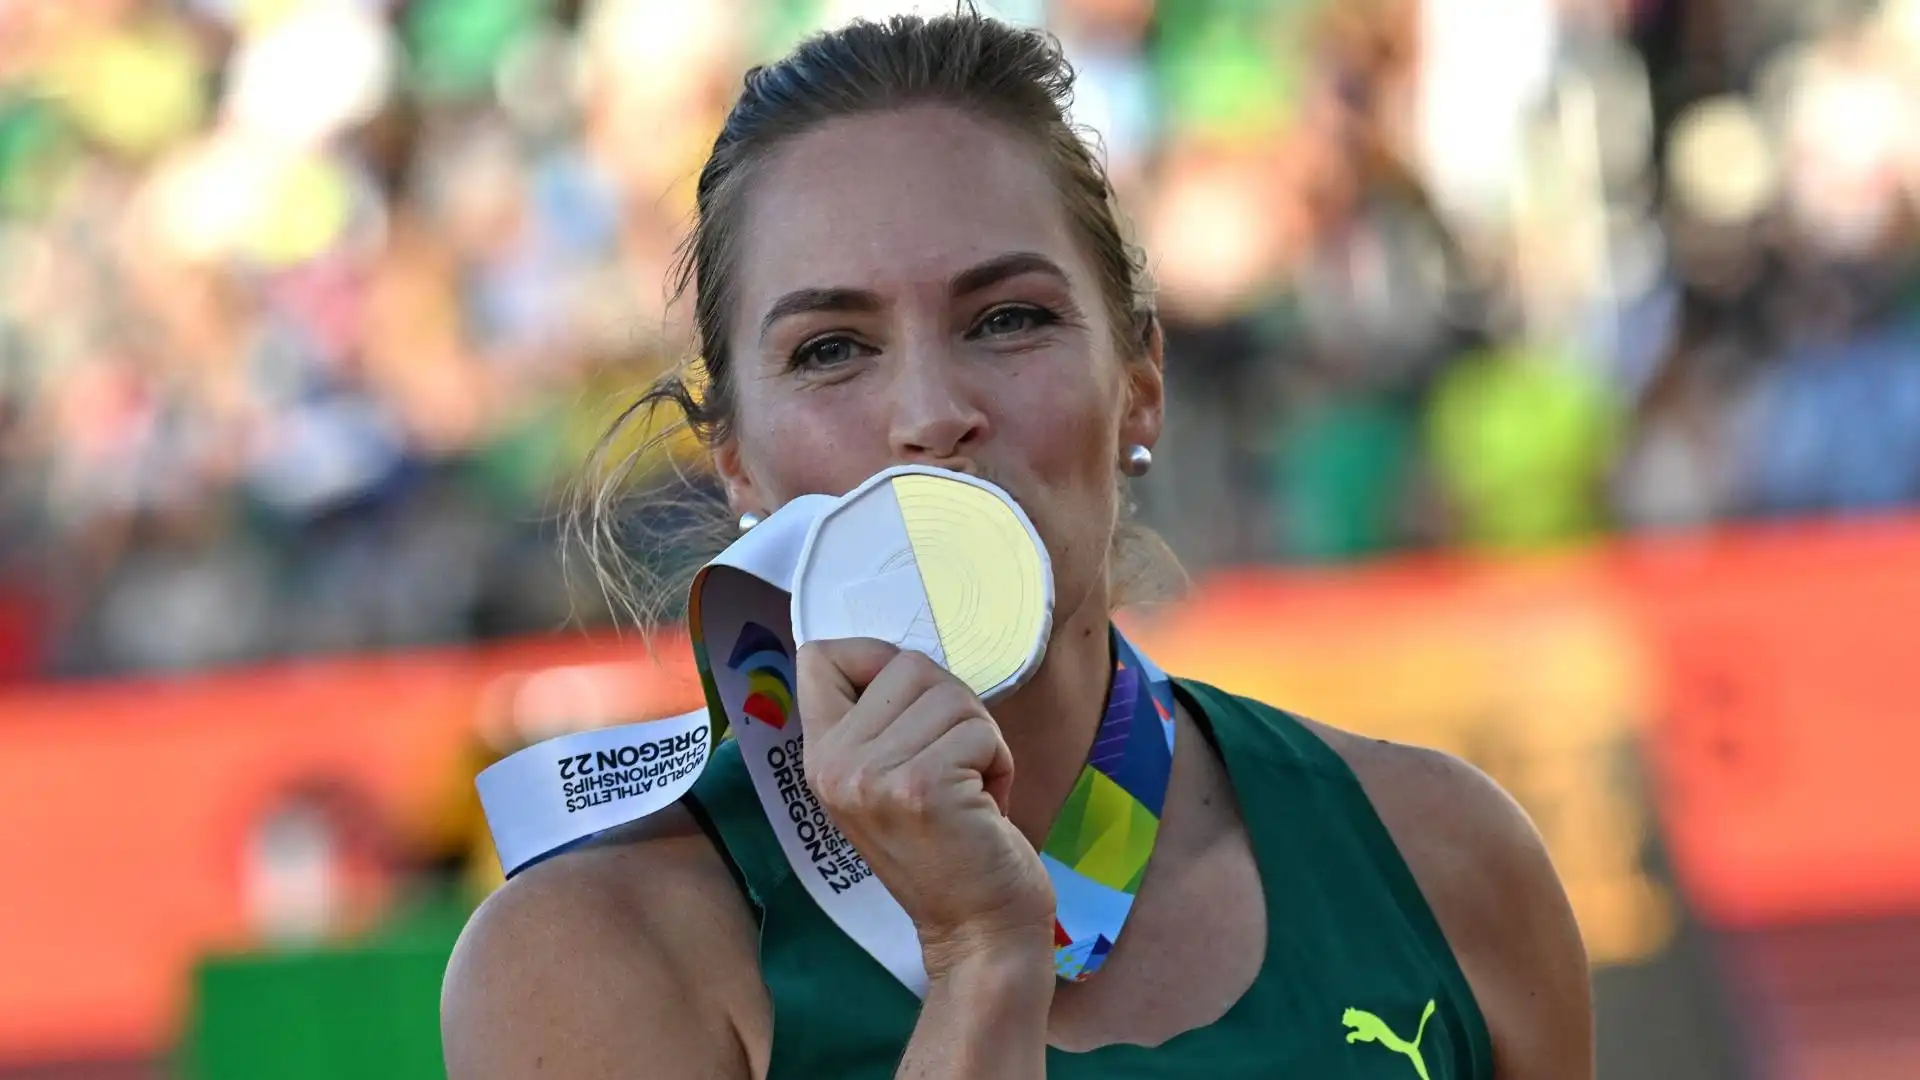 La giavellottista australiana si è confermata campionessa, avendo conquistato gli ultimi mondiali a Doha, nel 2019